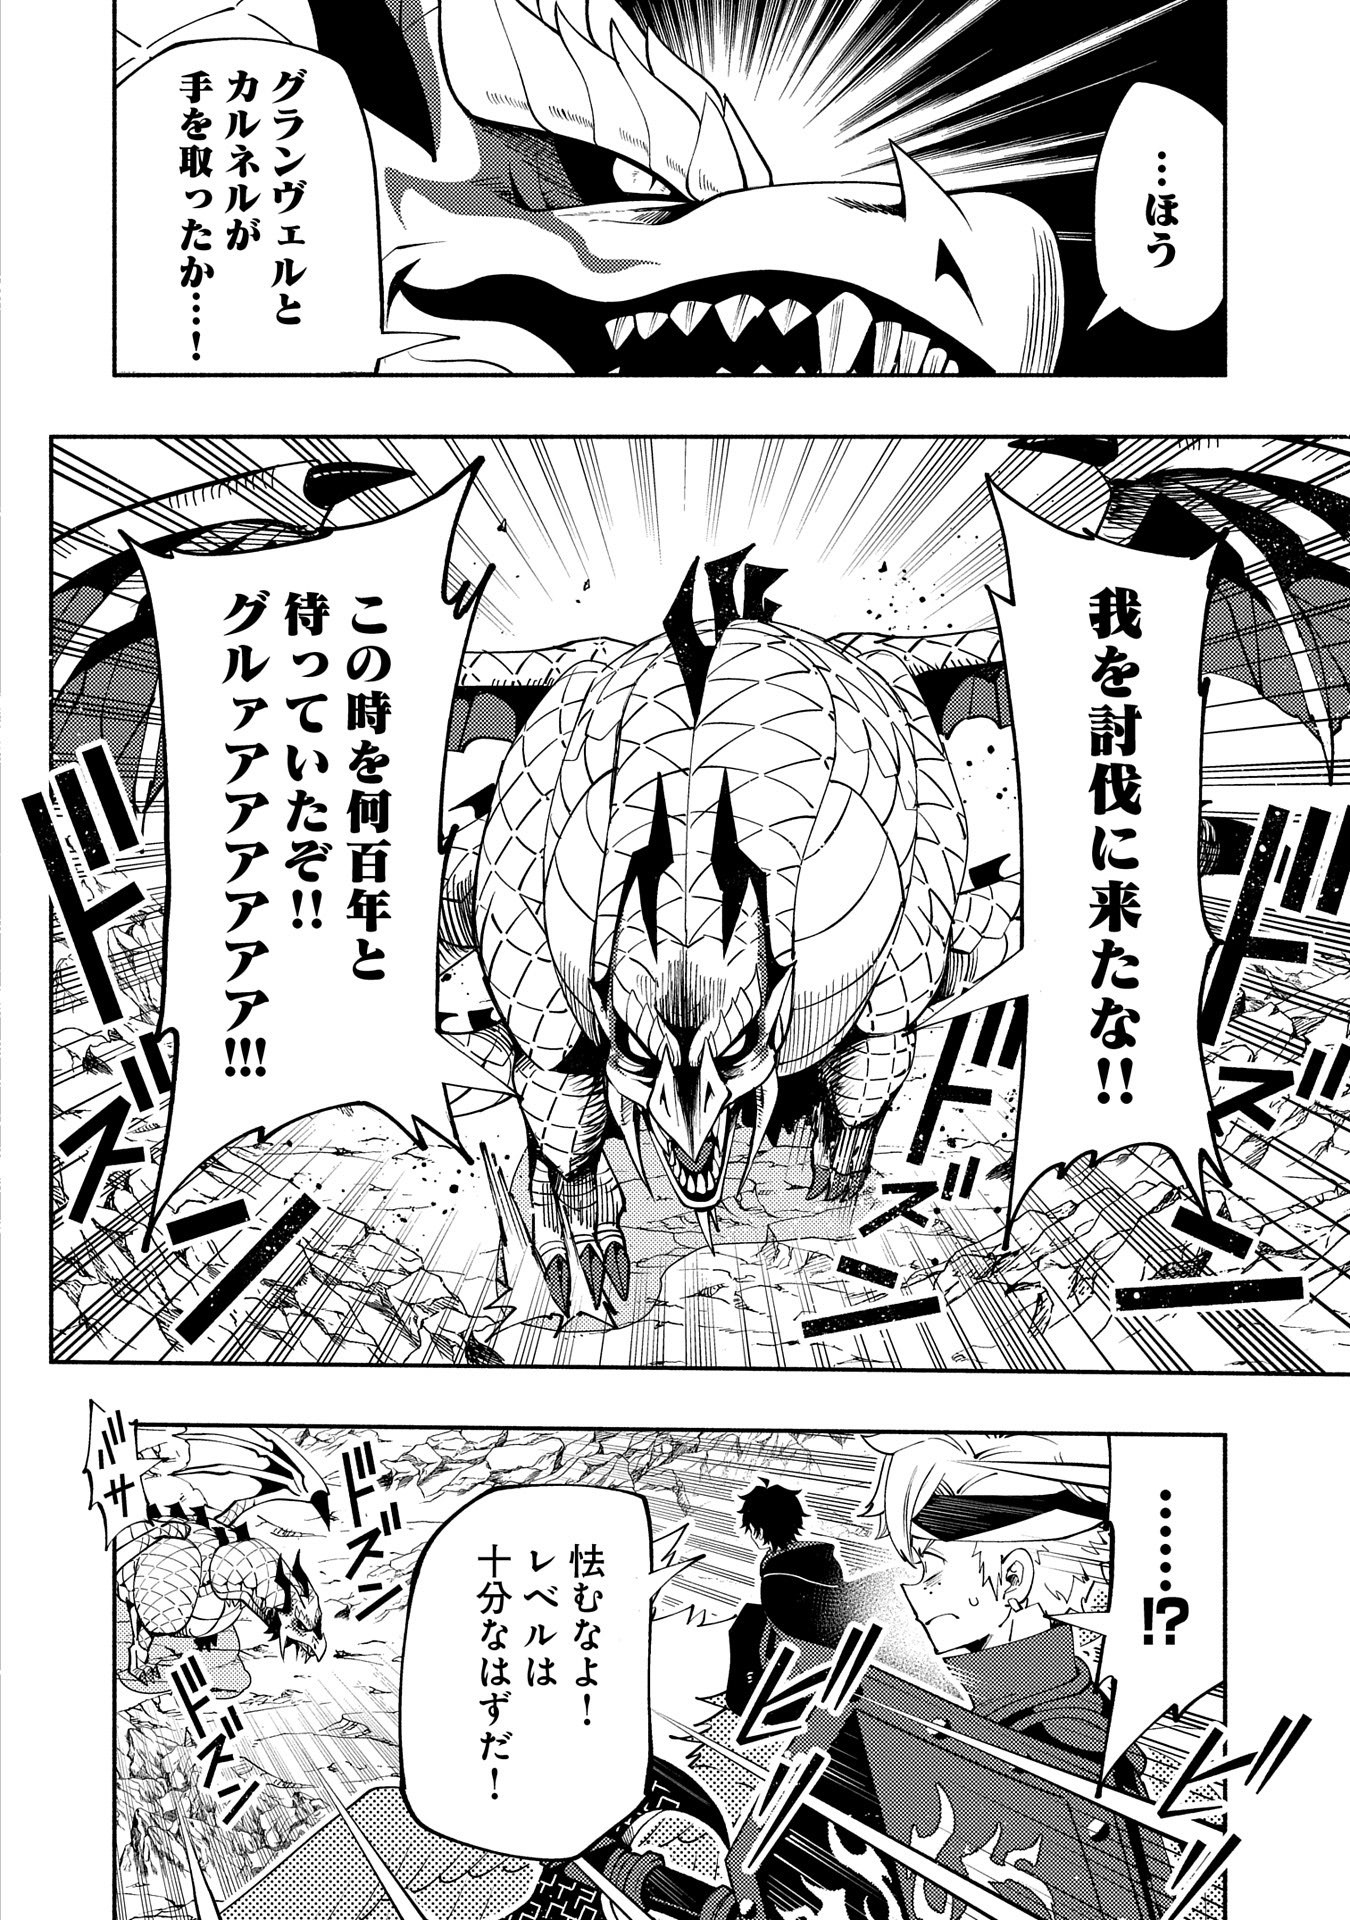 Hell Mode: Yarikomi Suki no Gamer wa Hai Settei no Isekai de Musou Suru - Chapter 56 - Page 2